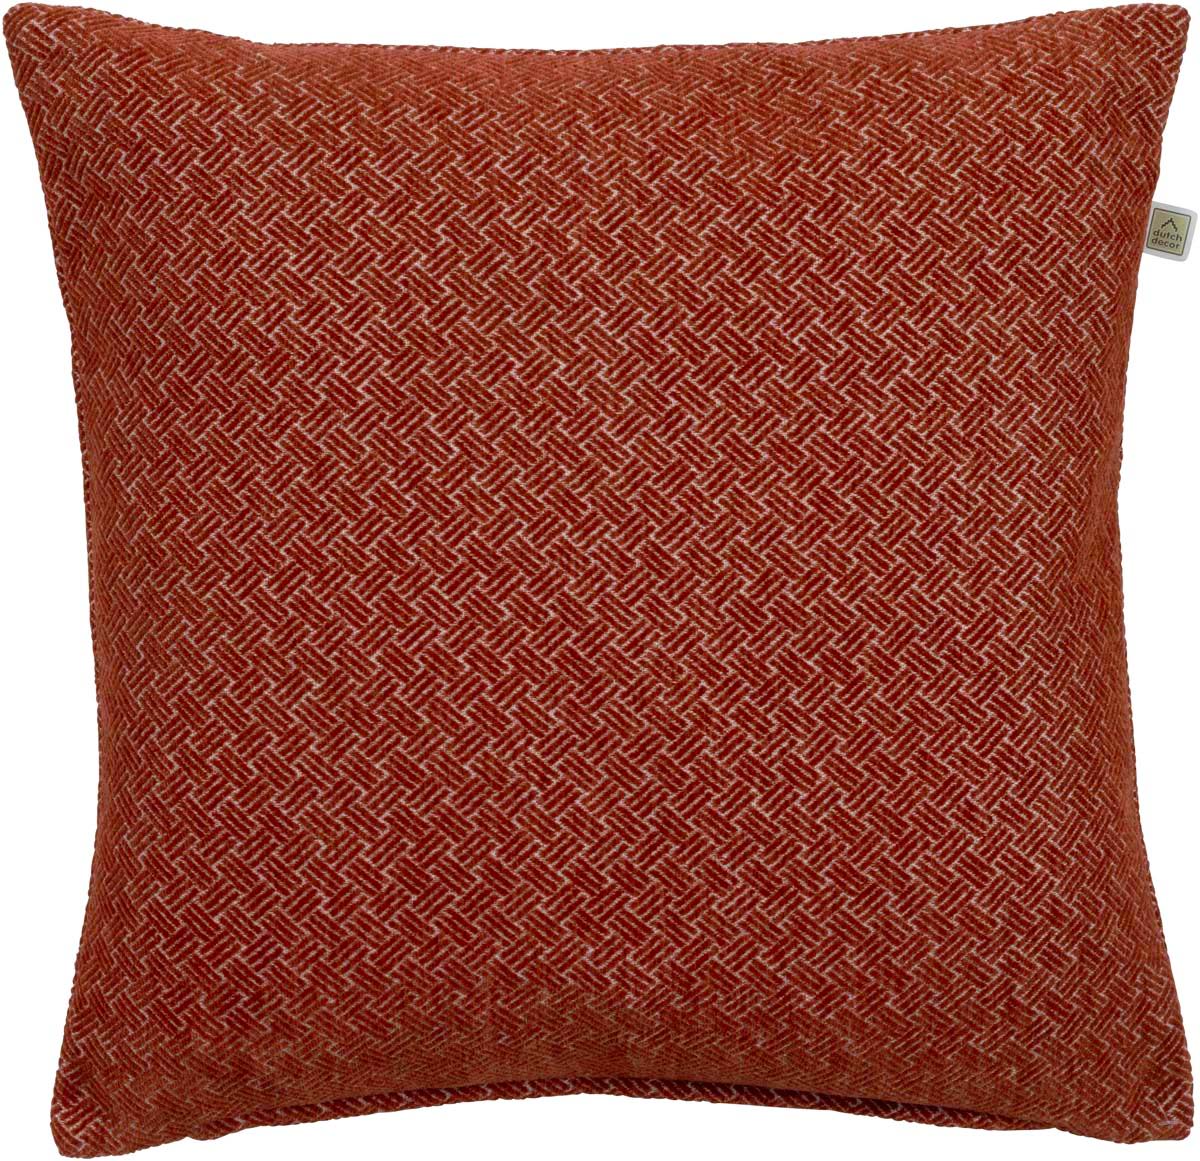 KATAN - Sierkussen 45x45 cm -  chili - rood - visgraat patroon